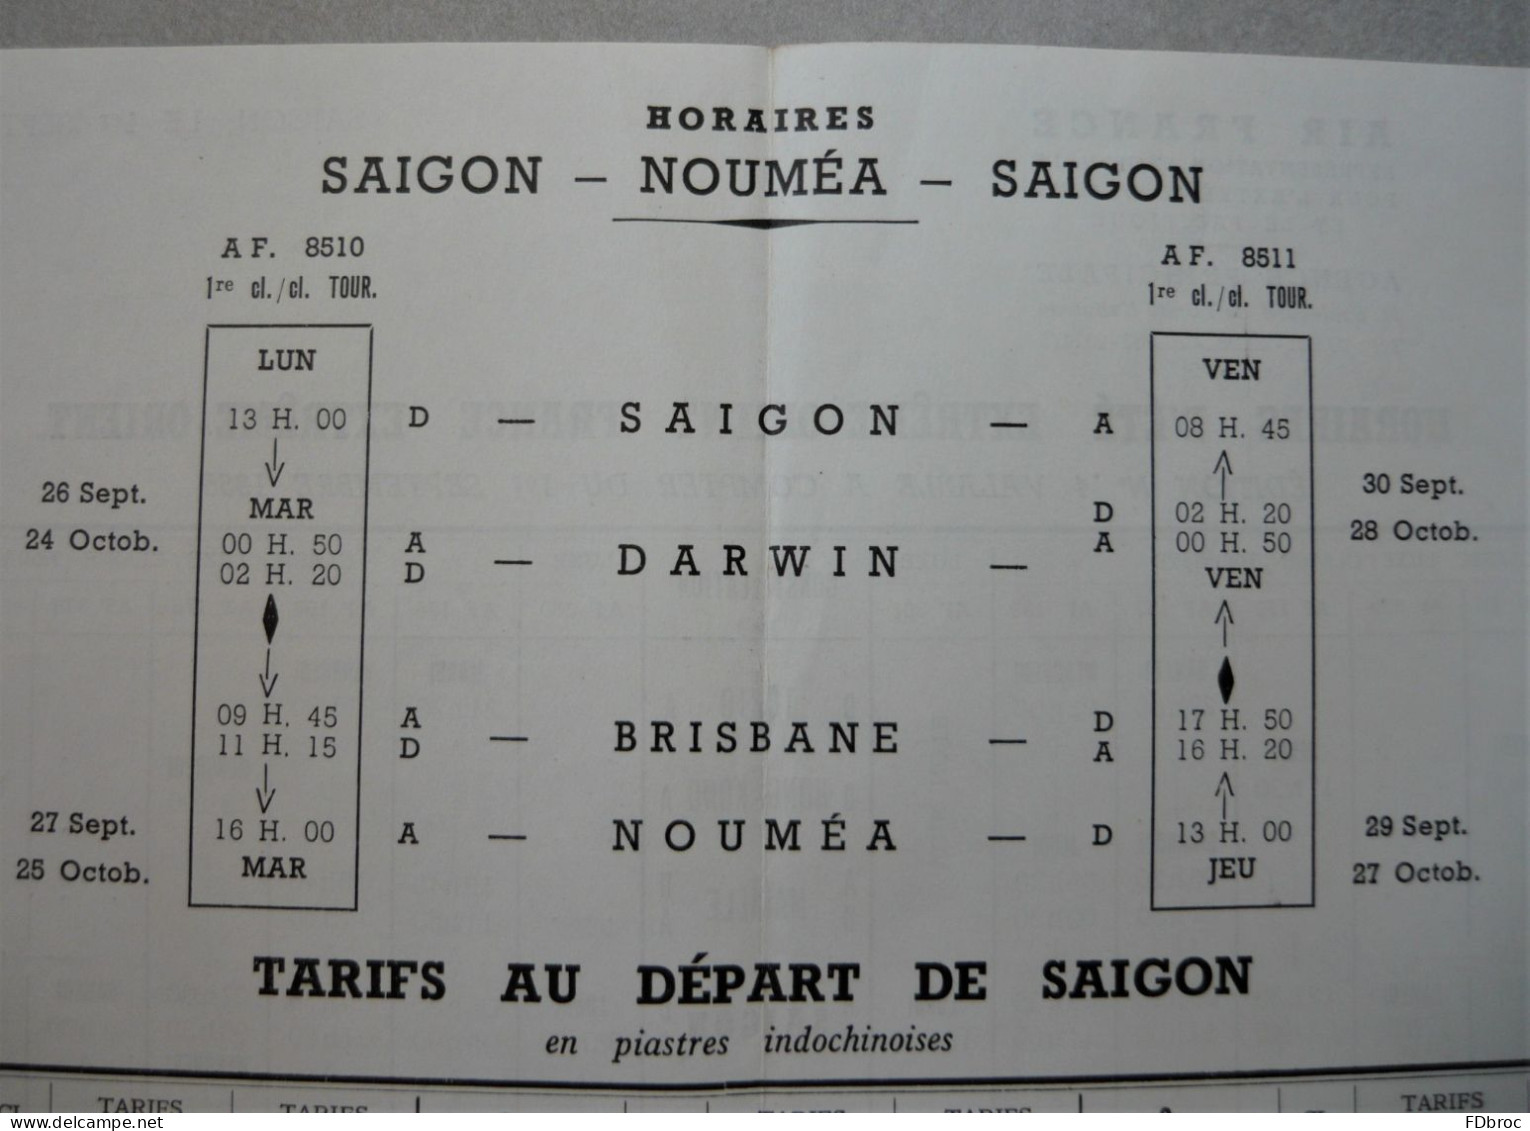 Ancien Dépliant Horaire (Time Table) Tarif AIR FRANCE Indicateur AVION SAIGON NOUMEA Extrême Orient Vietnam 1955 - Horaires